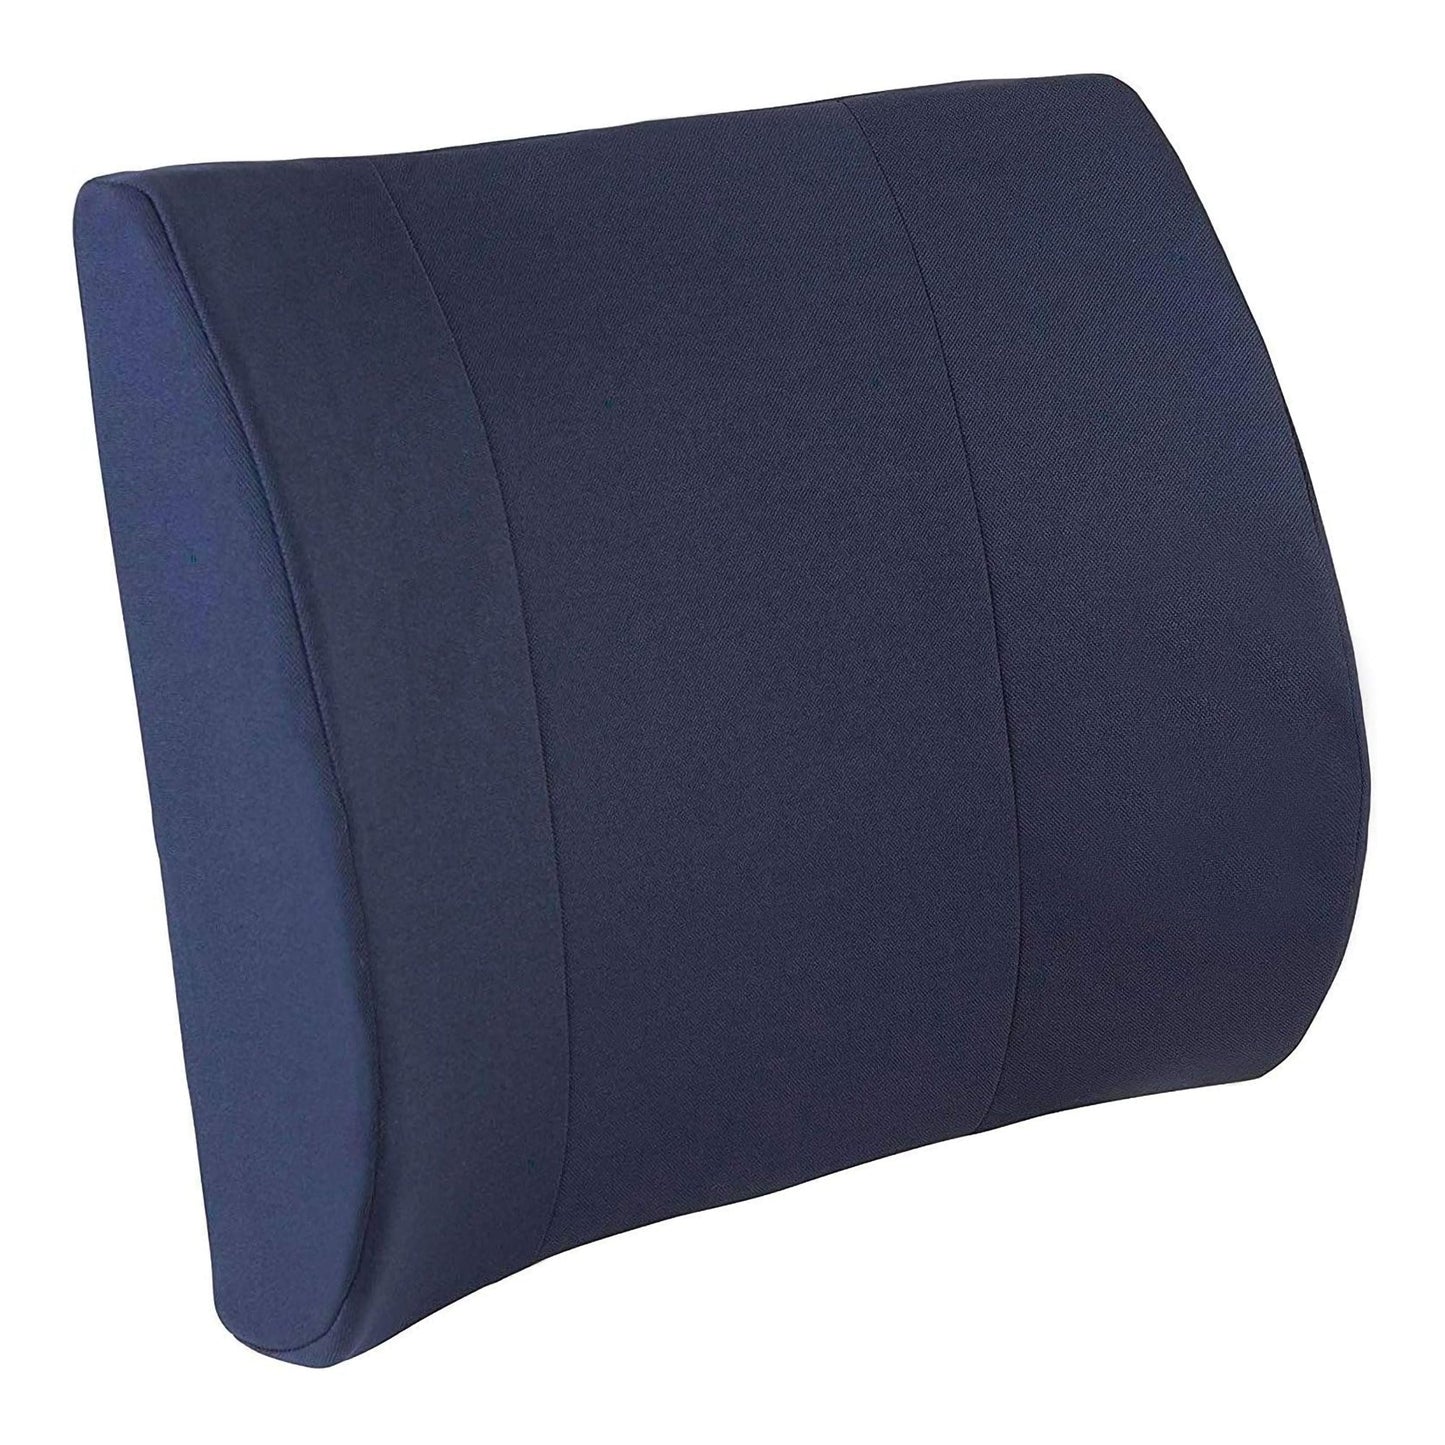 Dmi® Memory Foam Lumbar Seat Cushion, Navy Blue, Sold As 1/Each Mabis 555-7921-2400